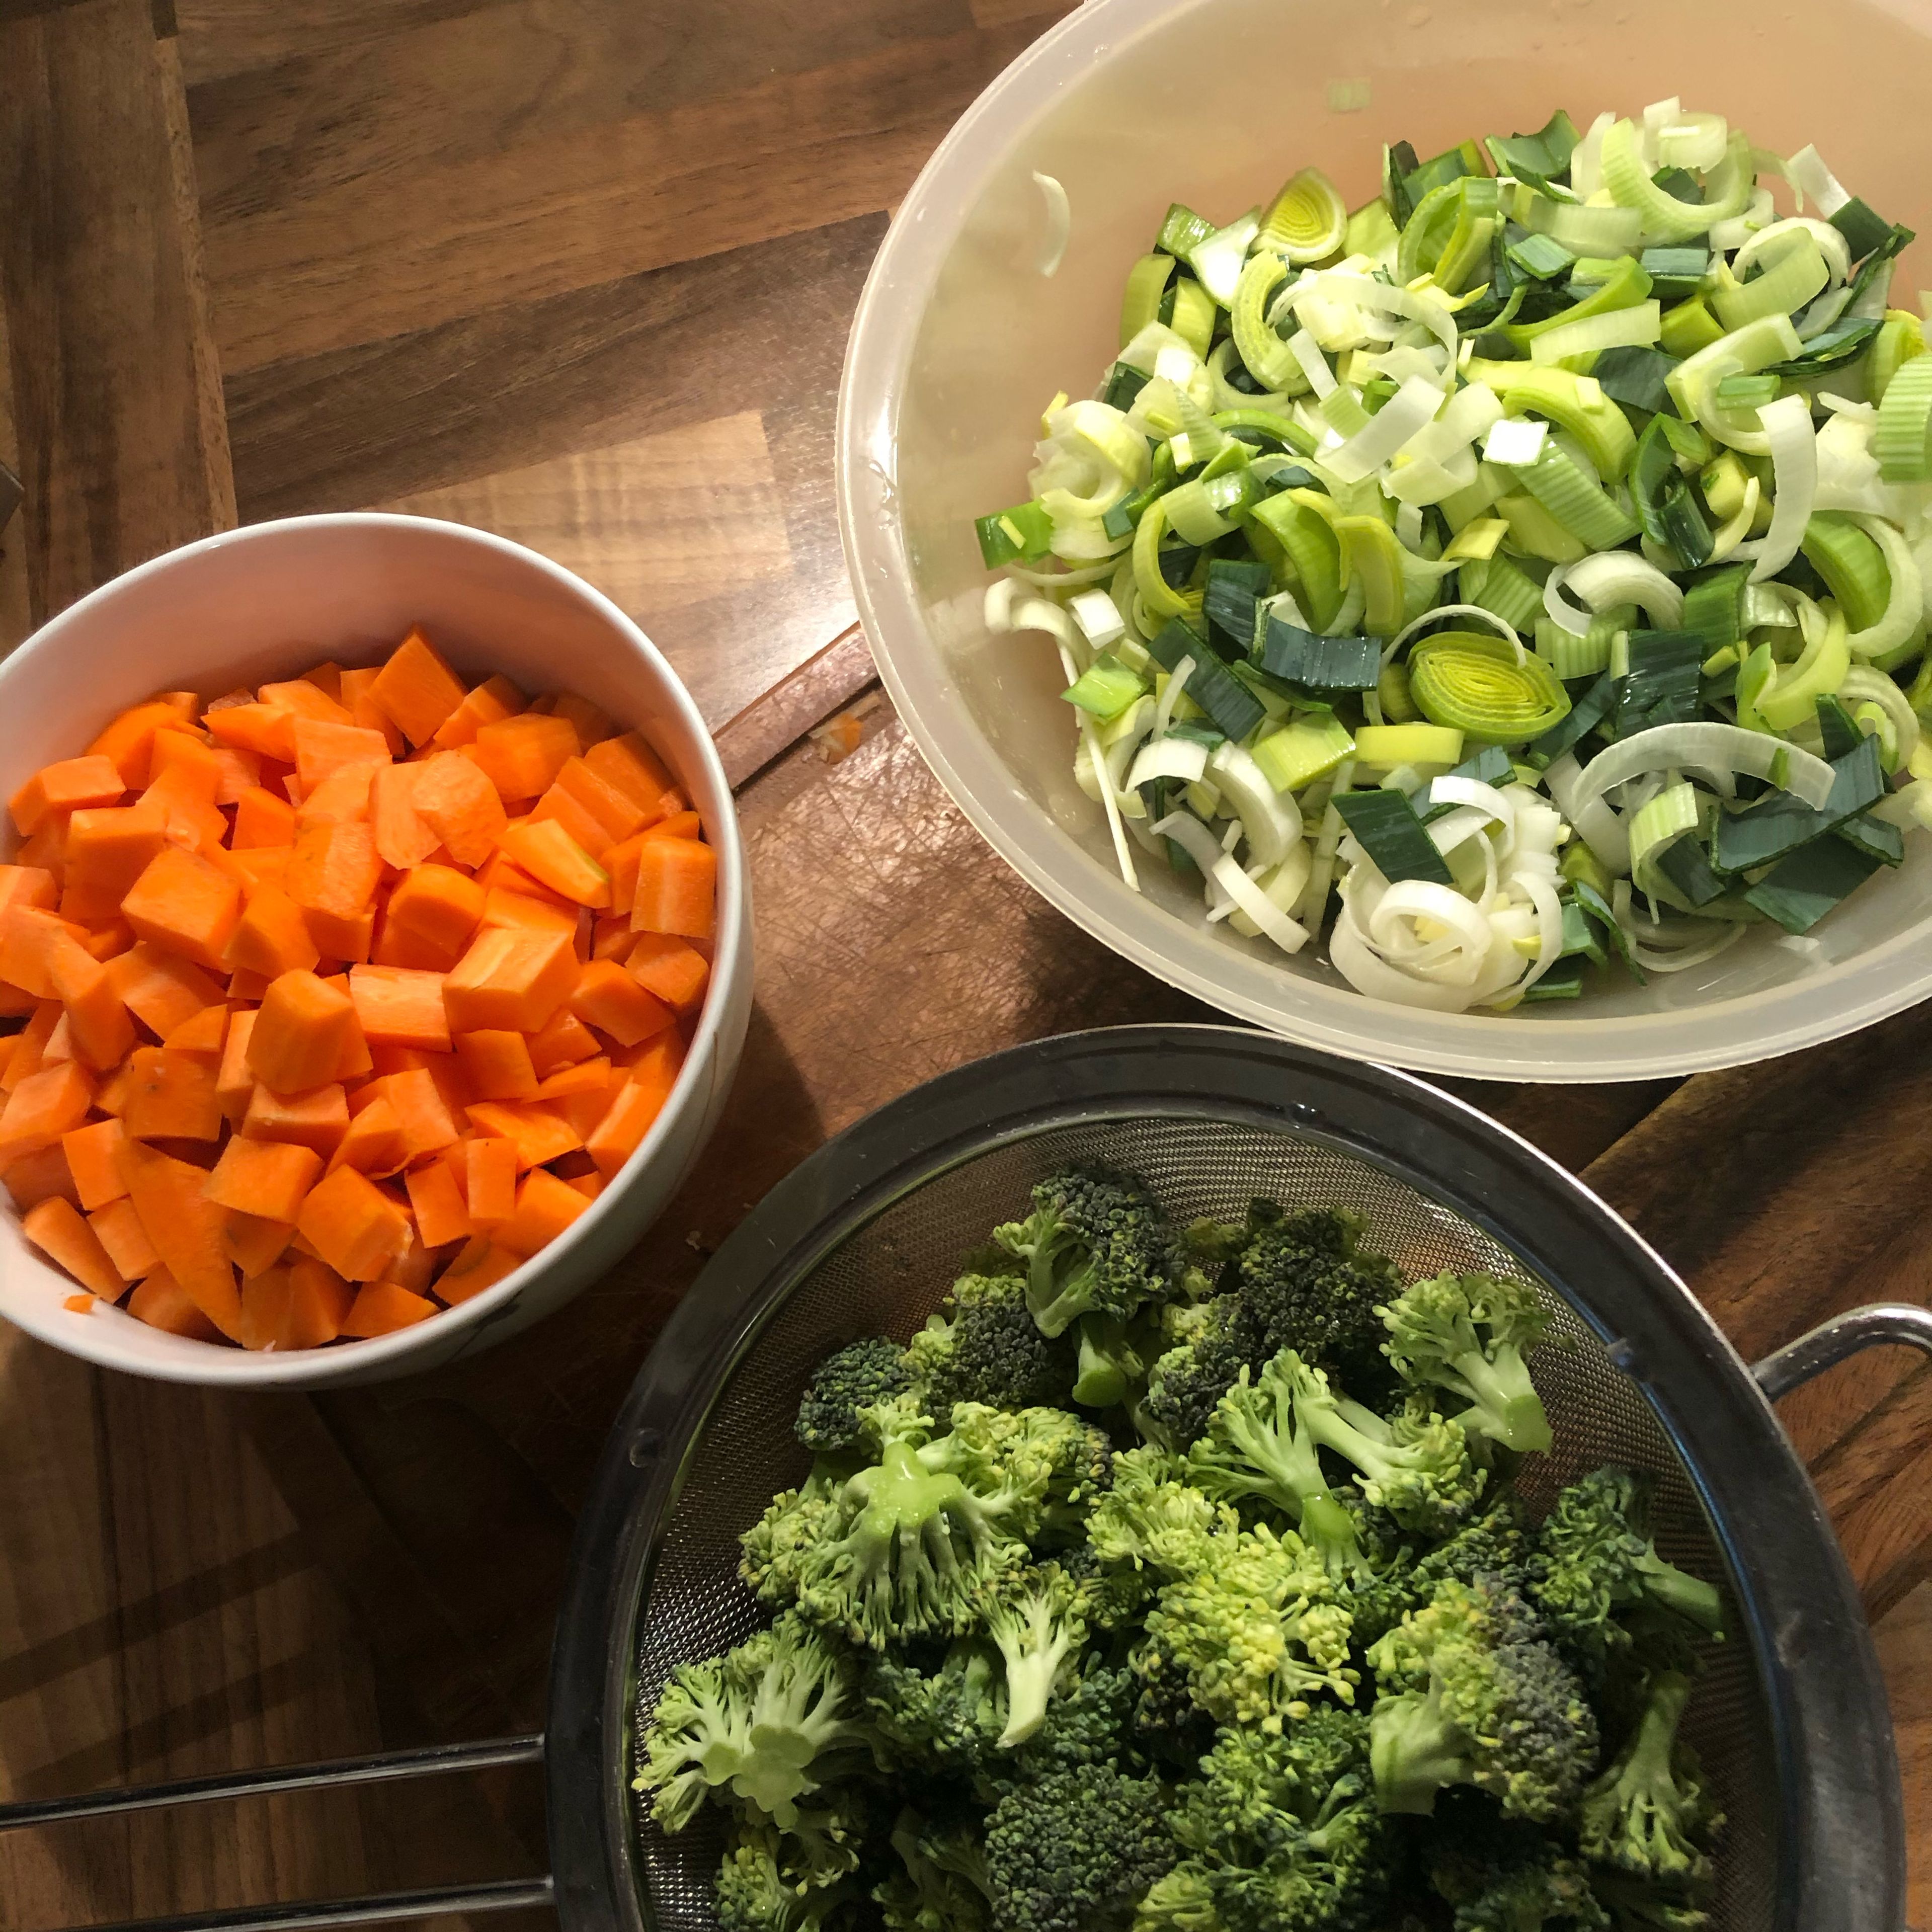 Karotten schälen und in Würfel schneiden. Brokkoli in Röschen aufteilen und Lauch in Halbmonde schneiden. Kartoffeln ebenfalls in Mundgerechte Stücke schneiden